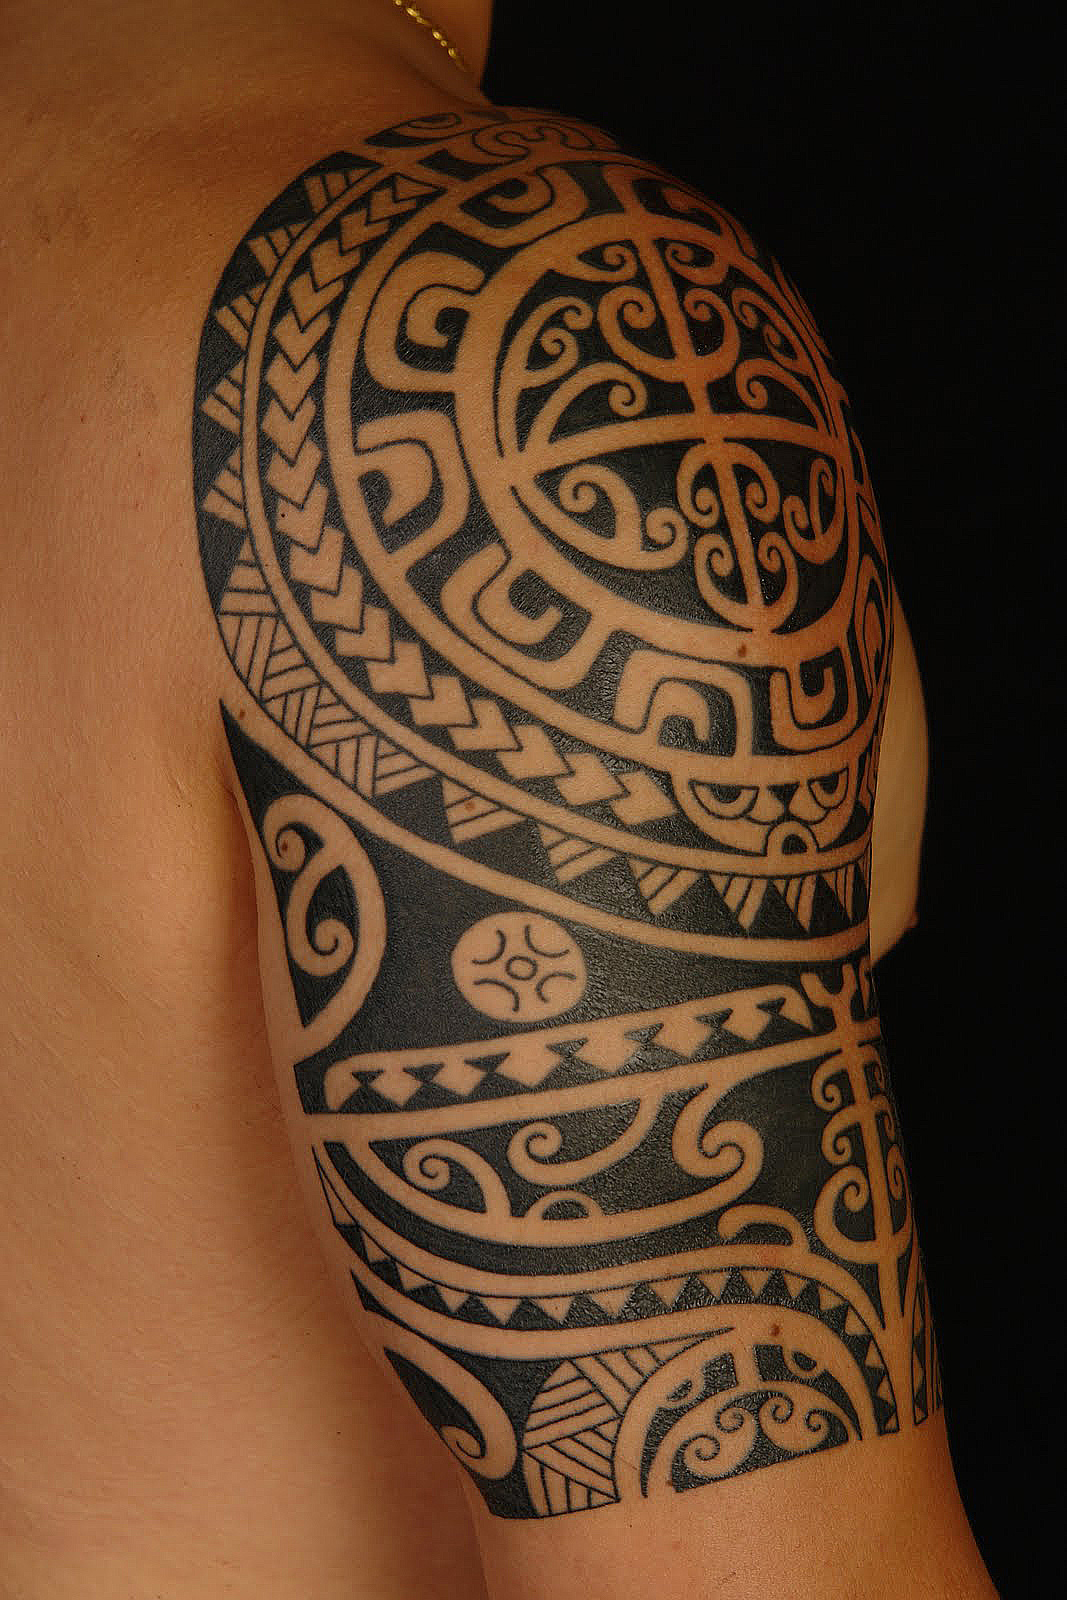 celtic knot shoulder tattoos